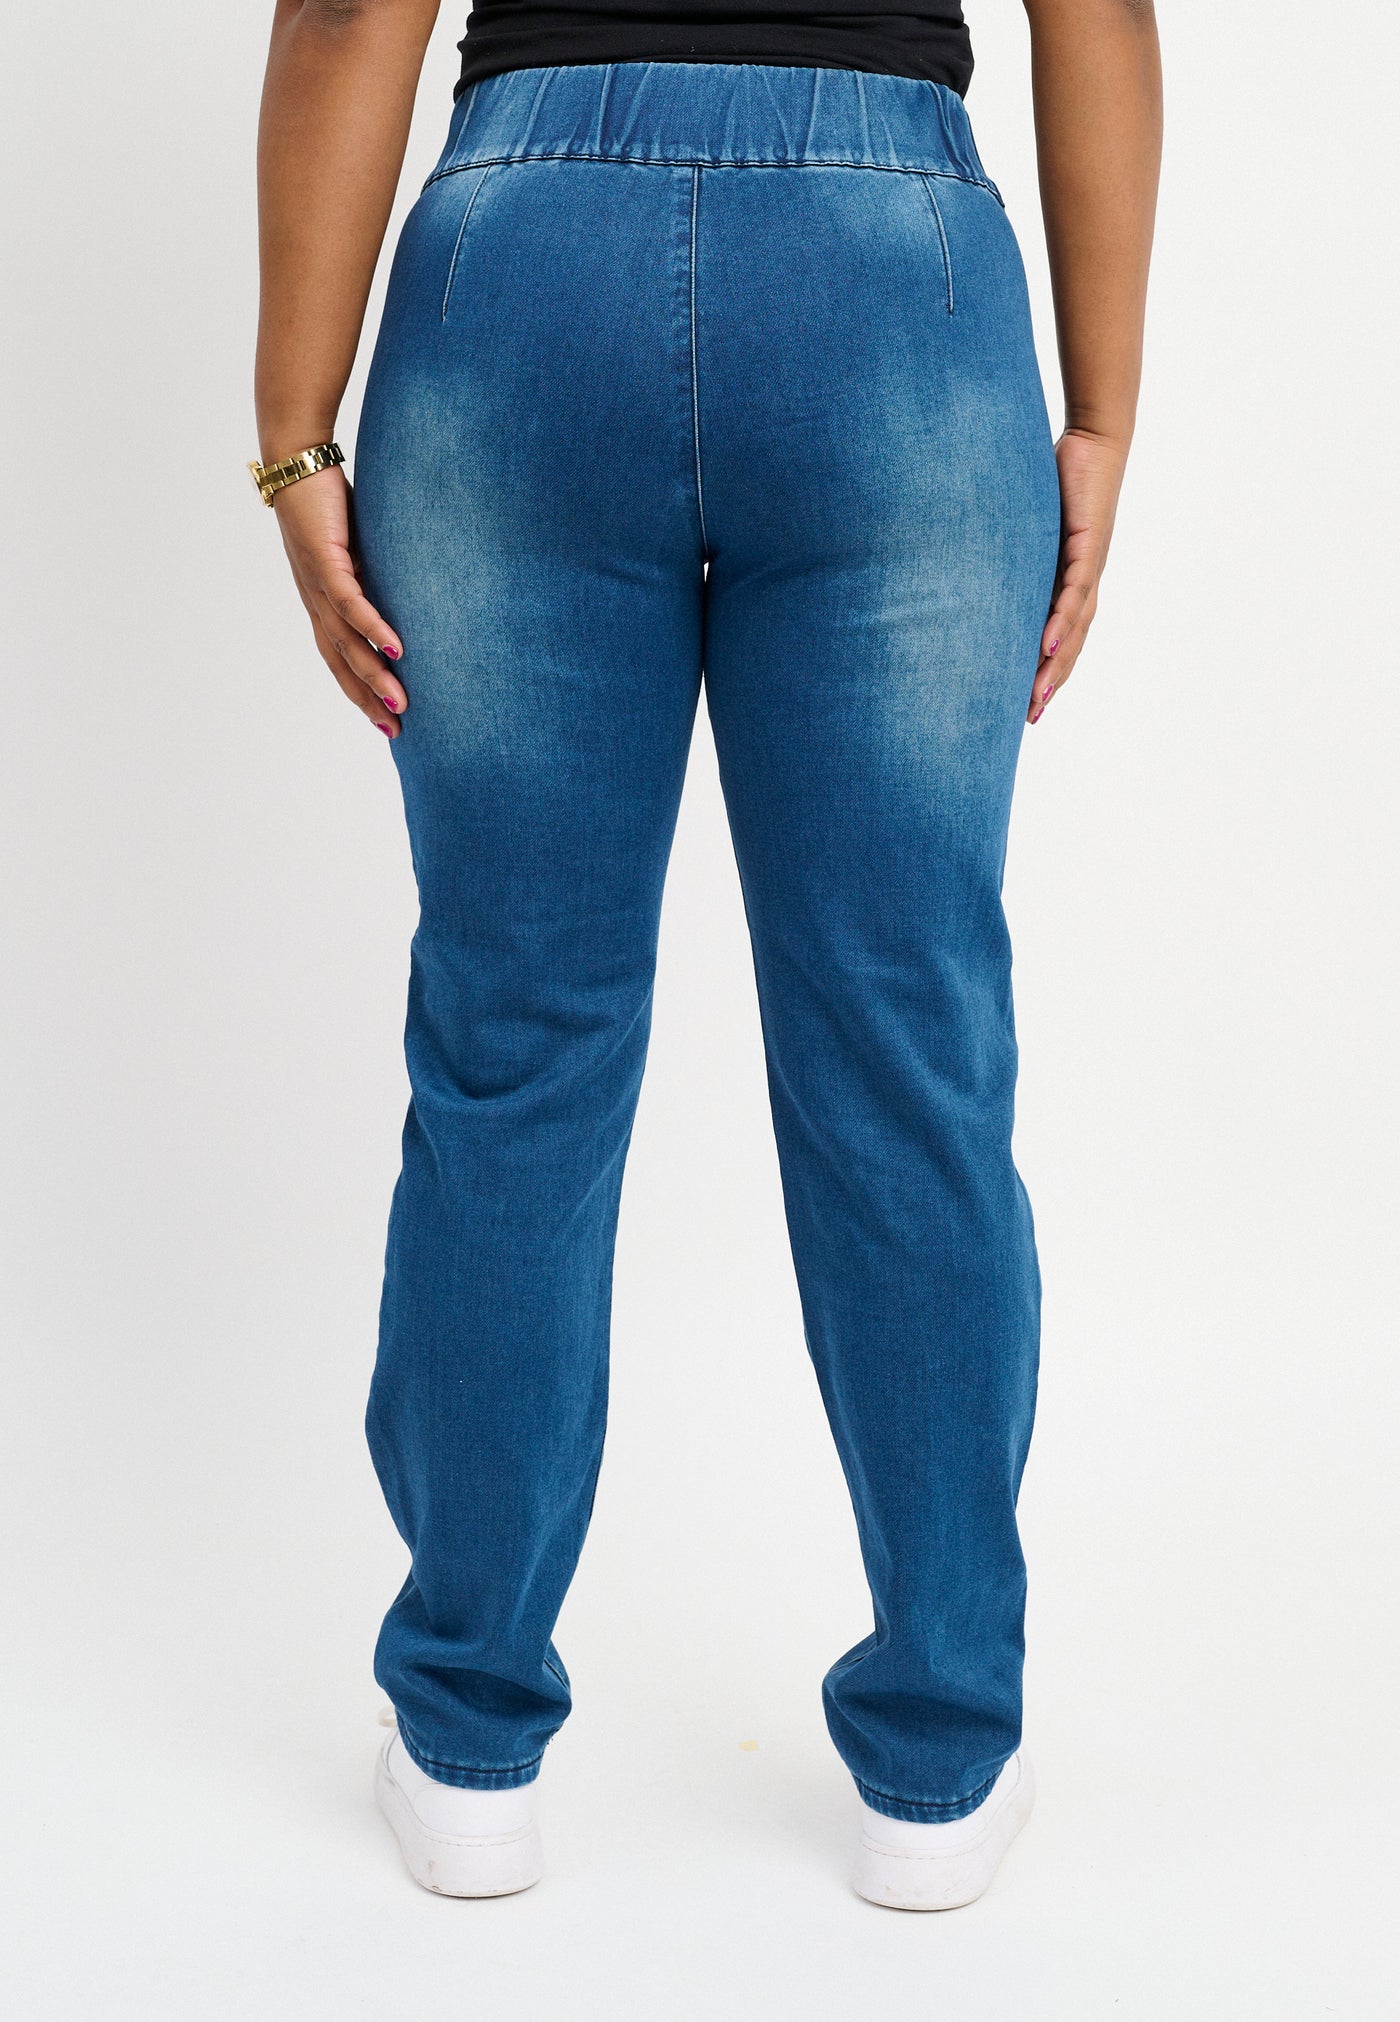 Pont Neuf PNLis Jeans 5501 DENIM BLUE